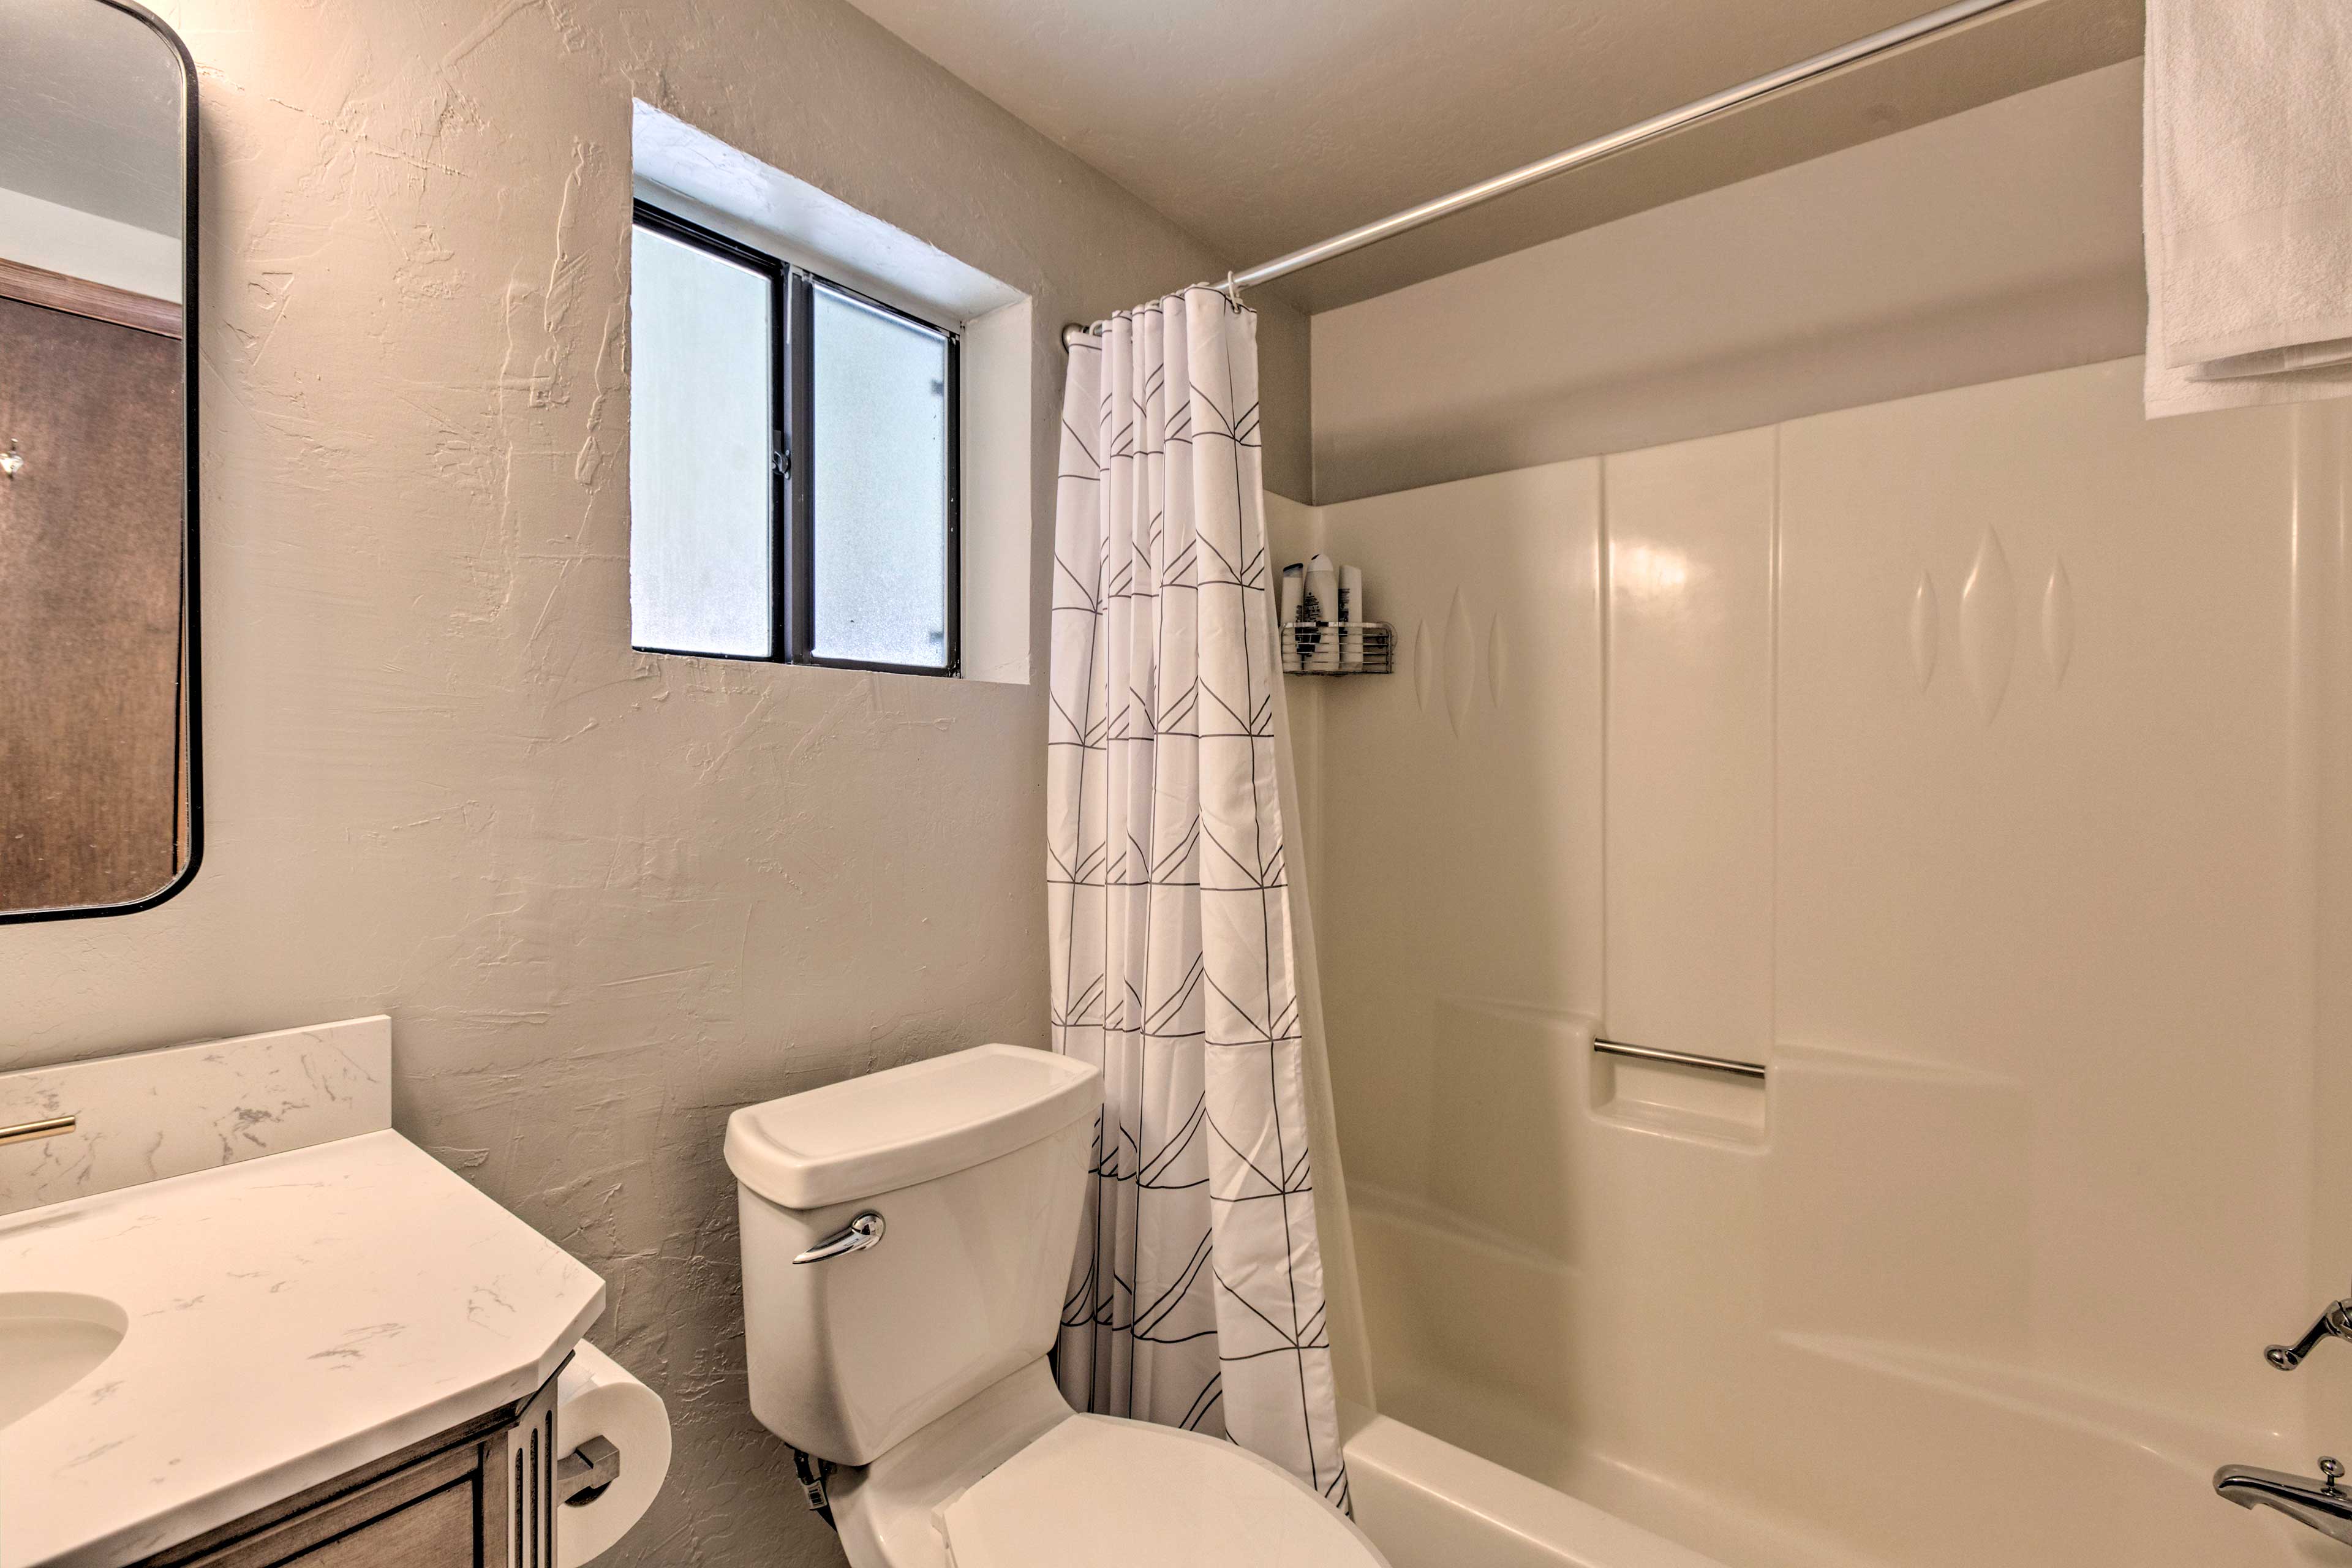 En-Suite Bathroom | Linens & Towels | Complimentary Toiletries | Hair Dryer